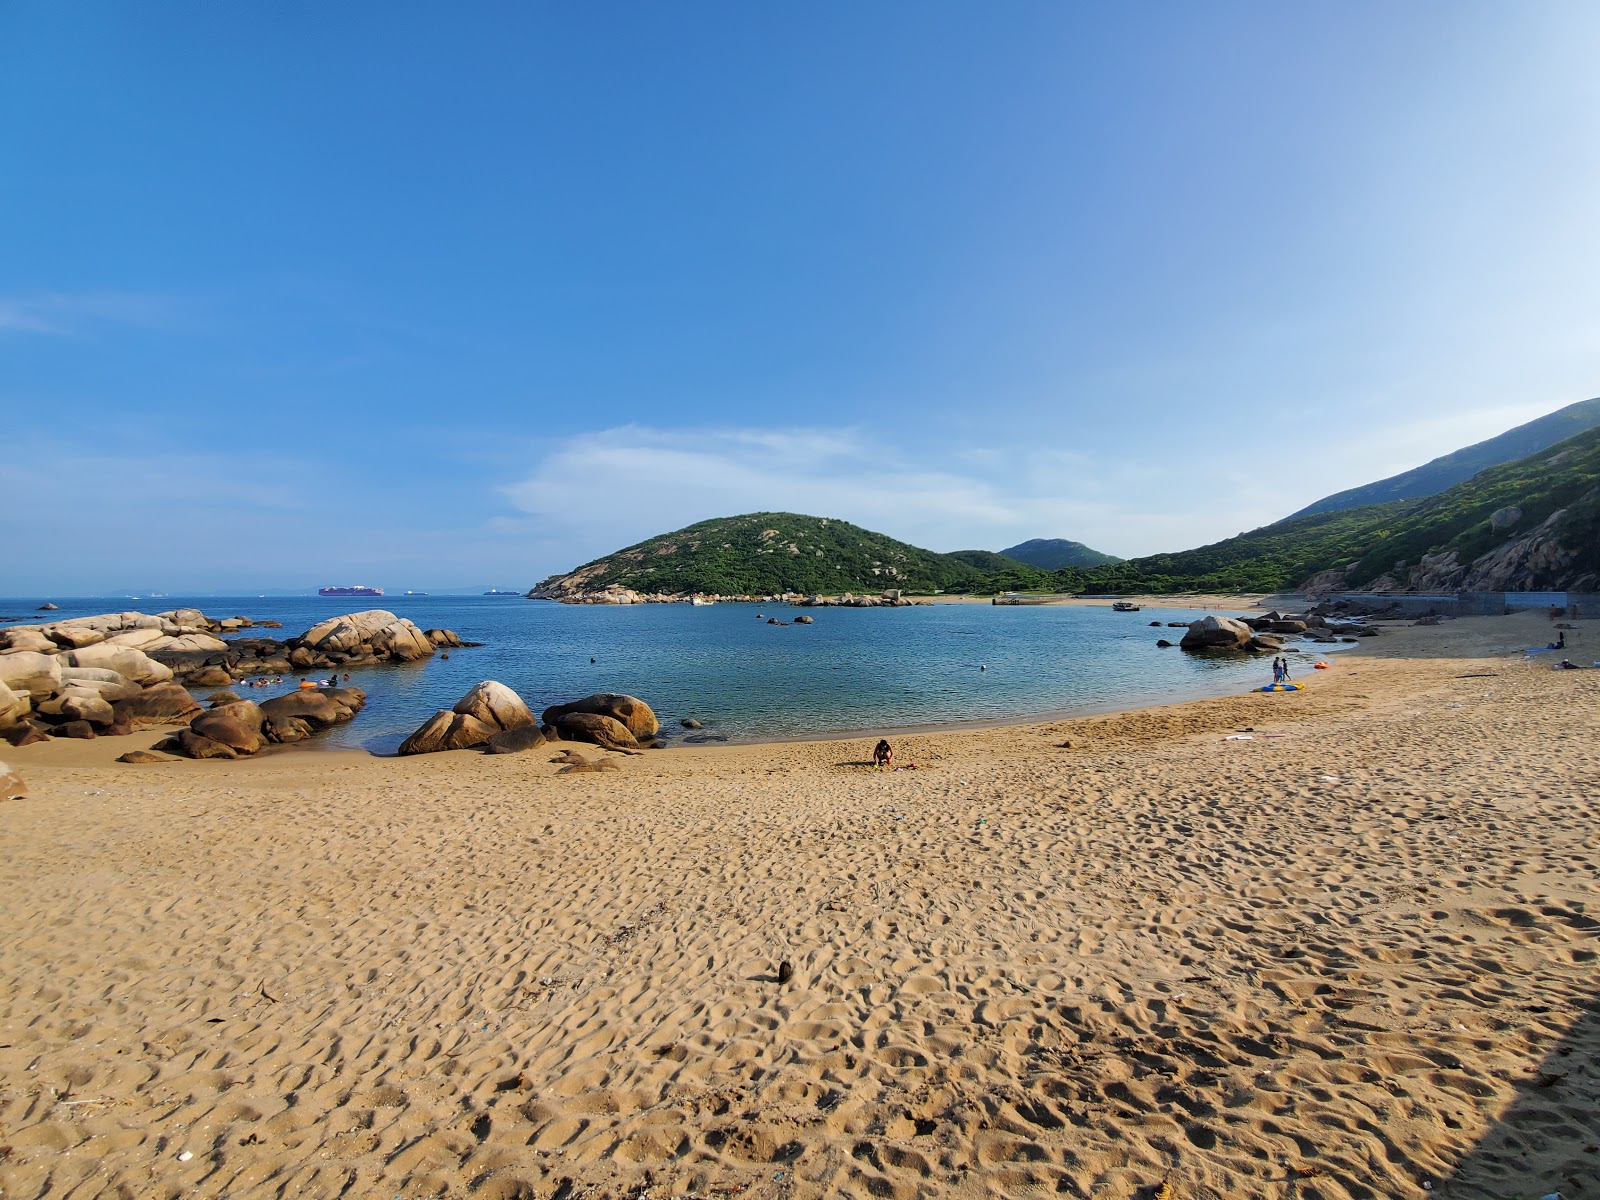 Valokuva Yung Shue Ha Beachista. sijaitsee luonnonalueella